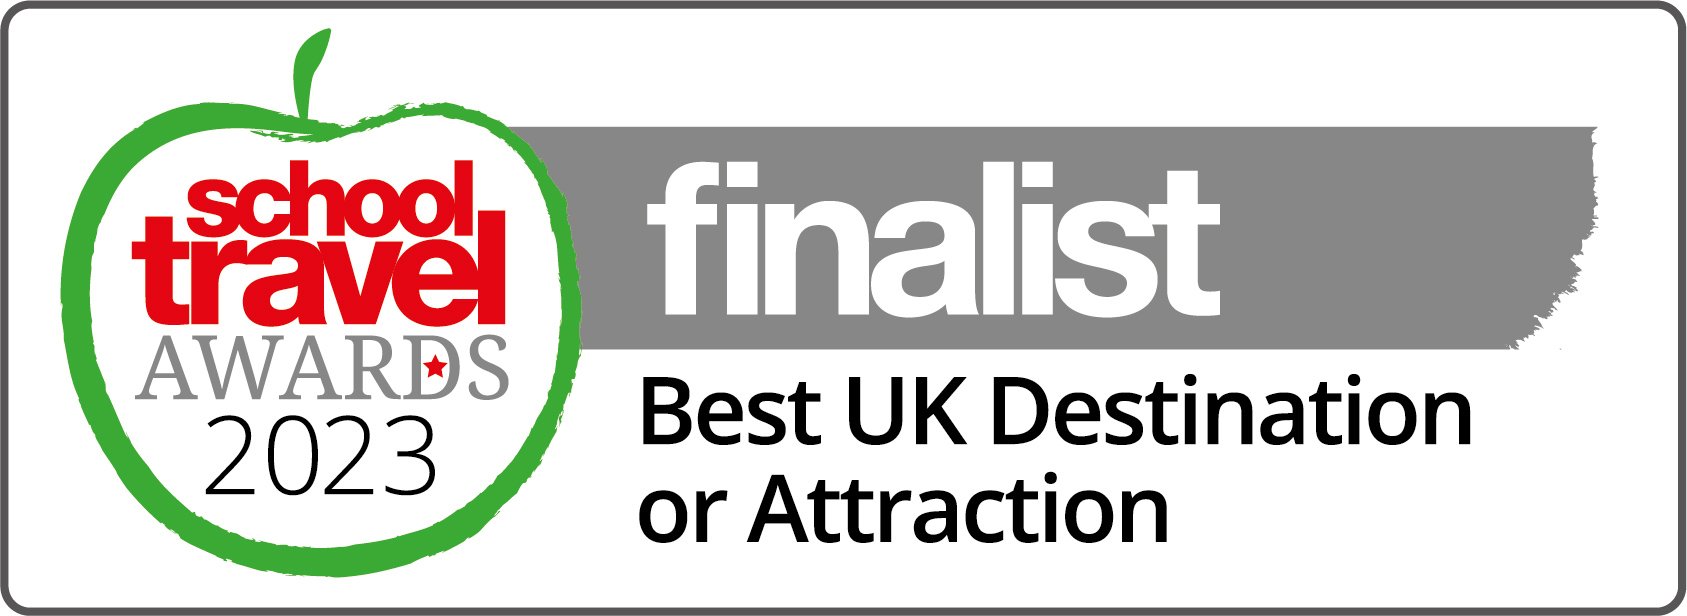 School Travel Awards finalist 2023 Best UK Attraction